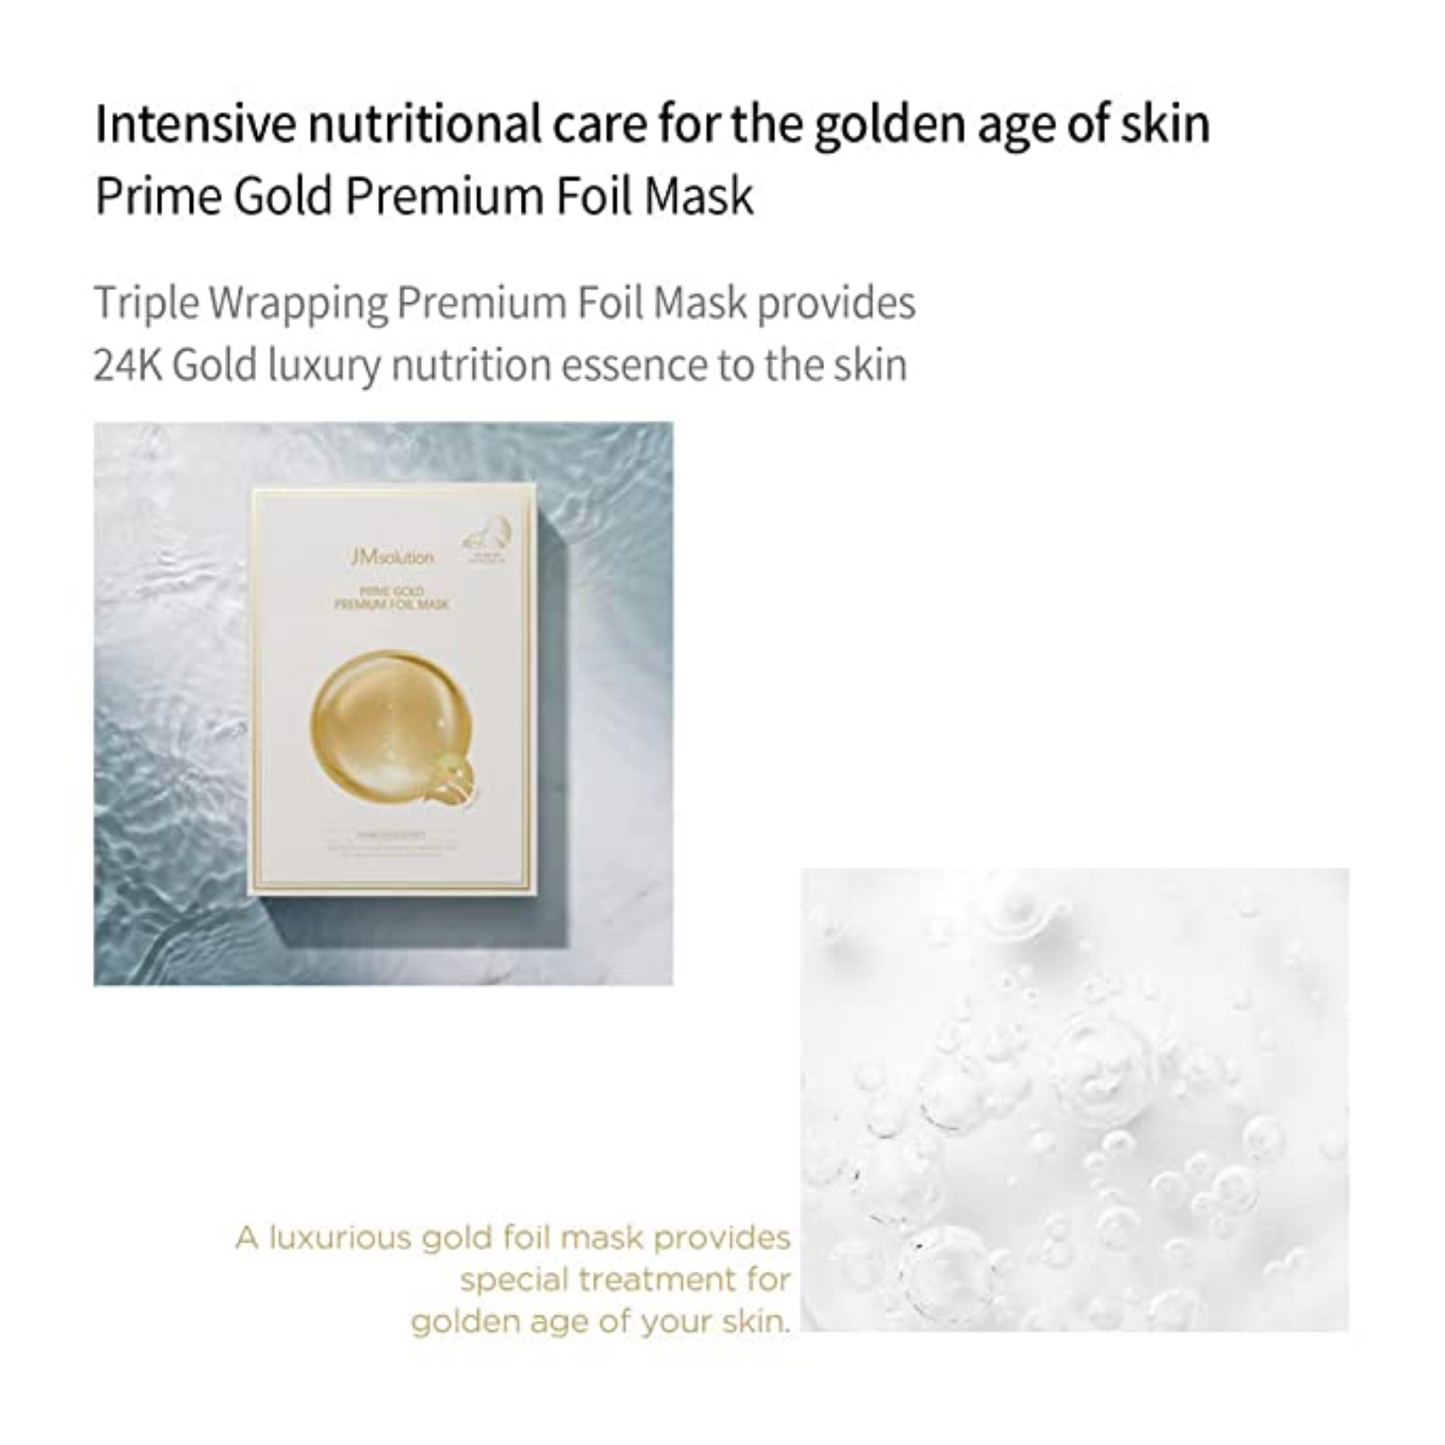 [JM Solution Mask] Prime Gold Premium Foil Mask